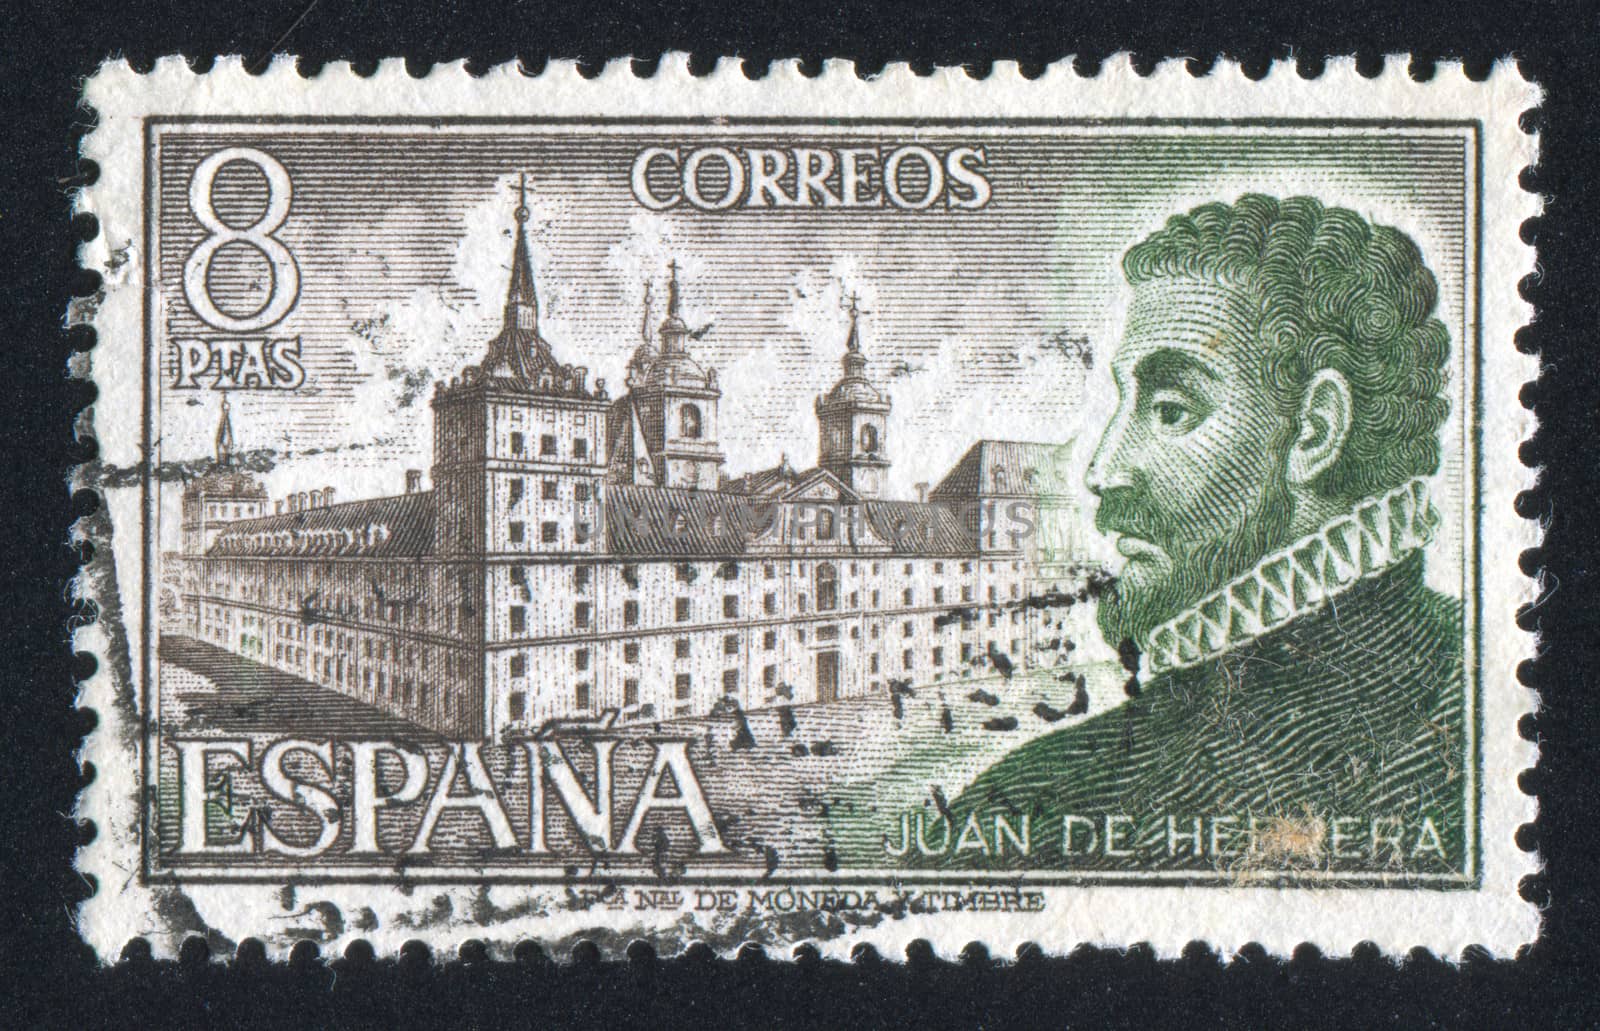 Juan de Herrera and Escorial by rook